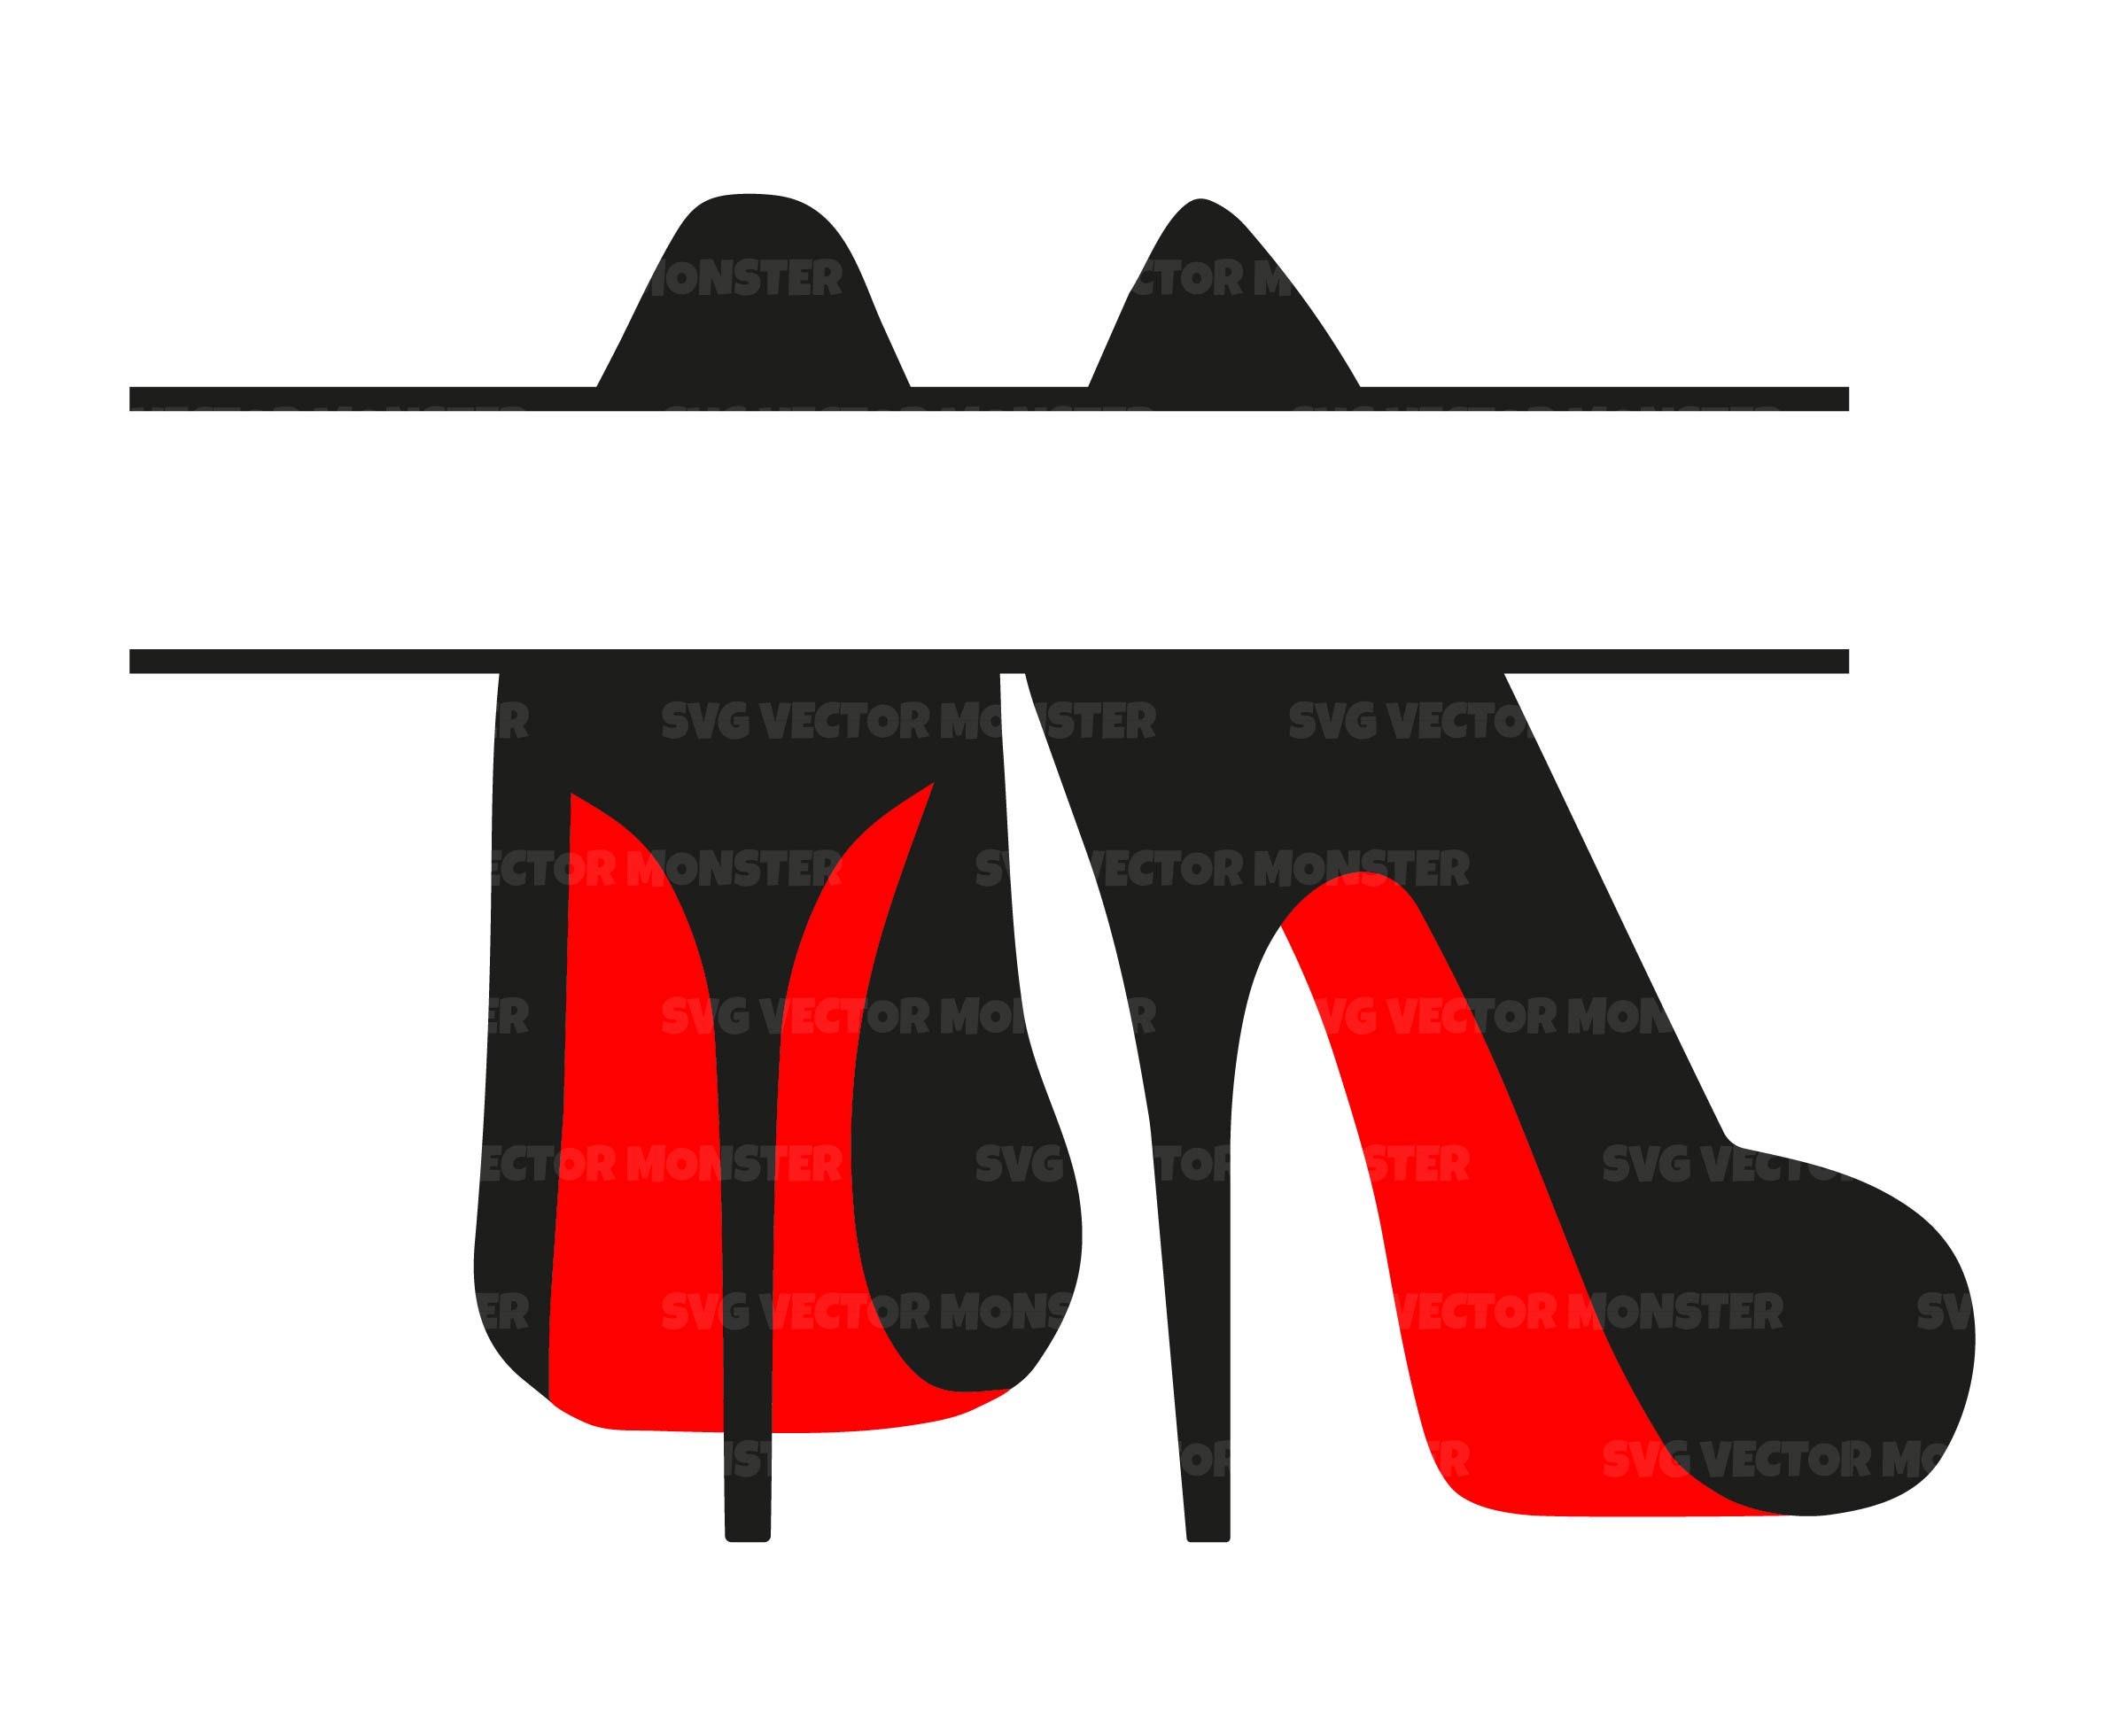 black heels red bottoms